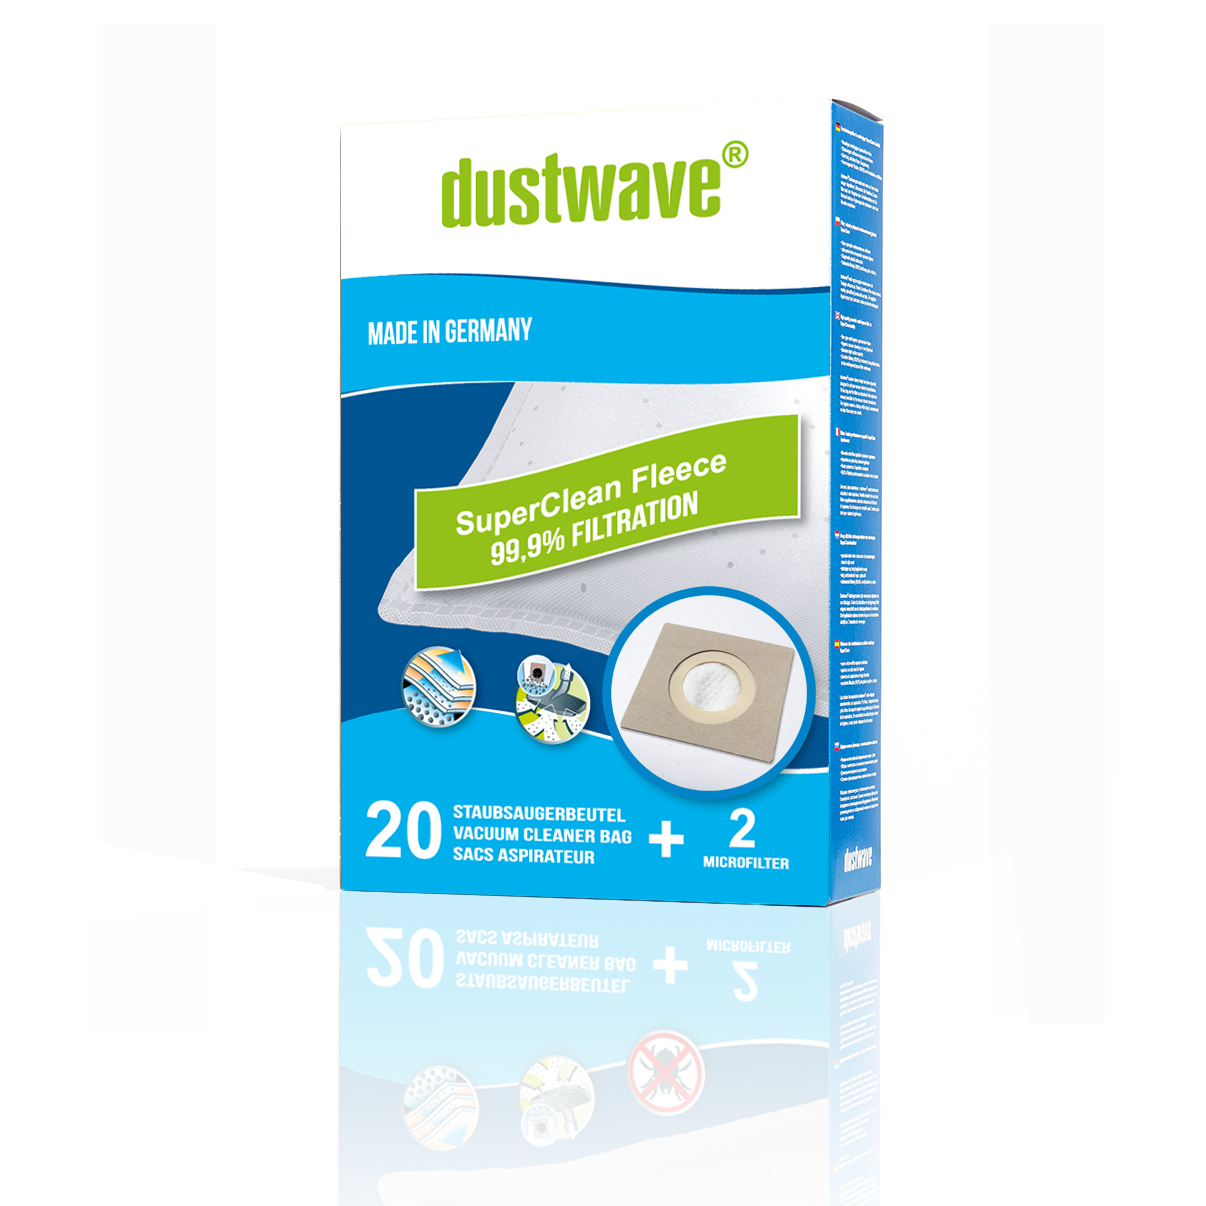 Dustwave® Premium 20 Staubsaugerbeutel für Hoover TX60PET 021 Telios Extra - hocheffizient, mehrlagiges Mikrovlies mit Hygieneverschluss - Made in Germany